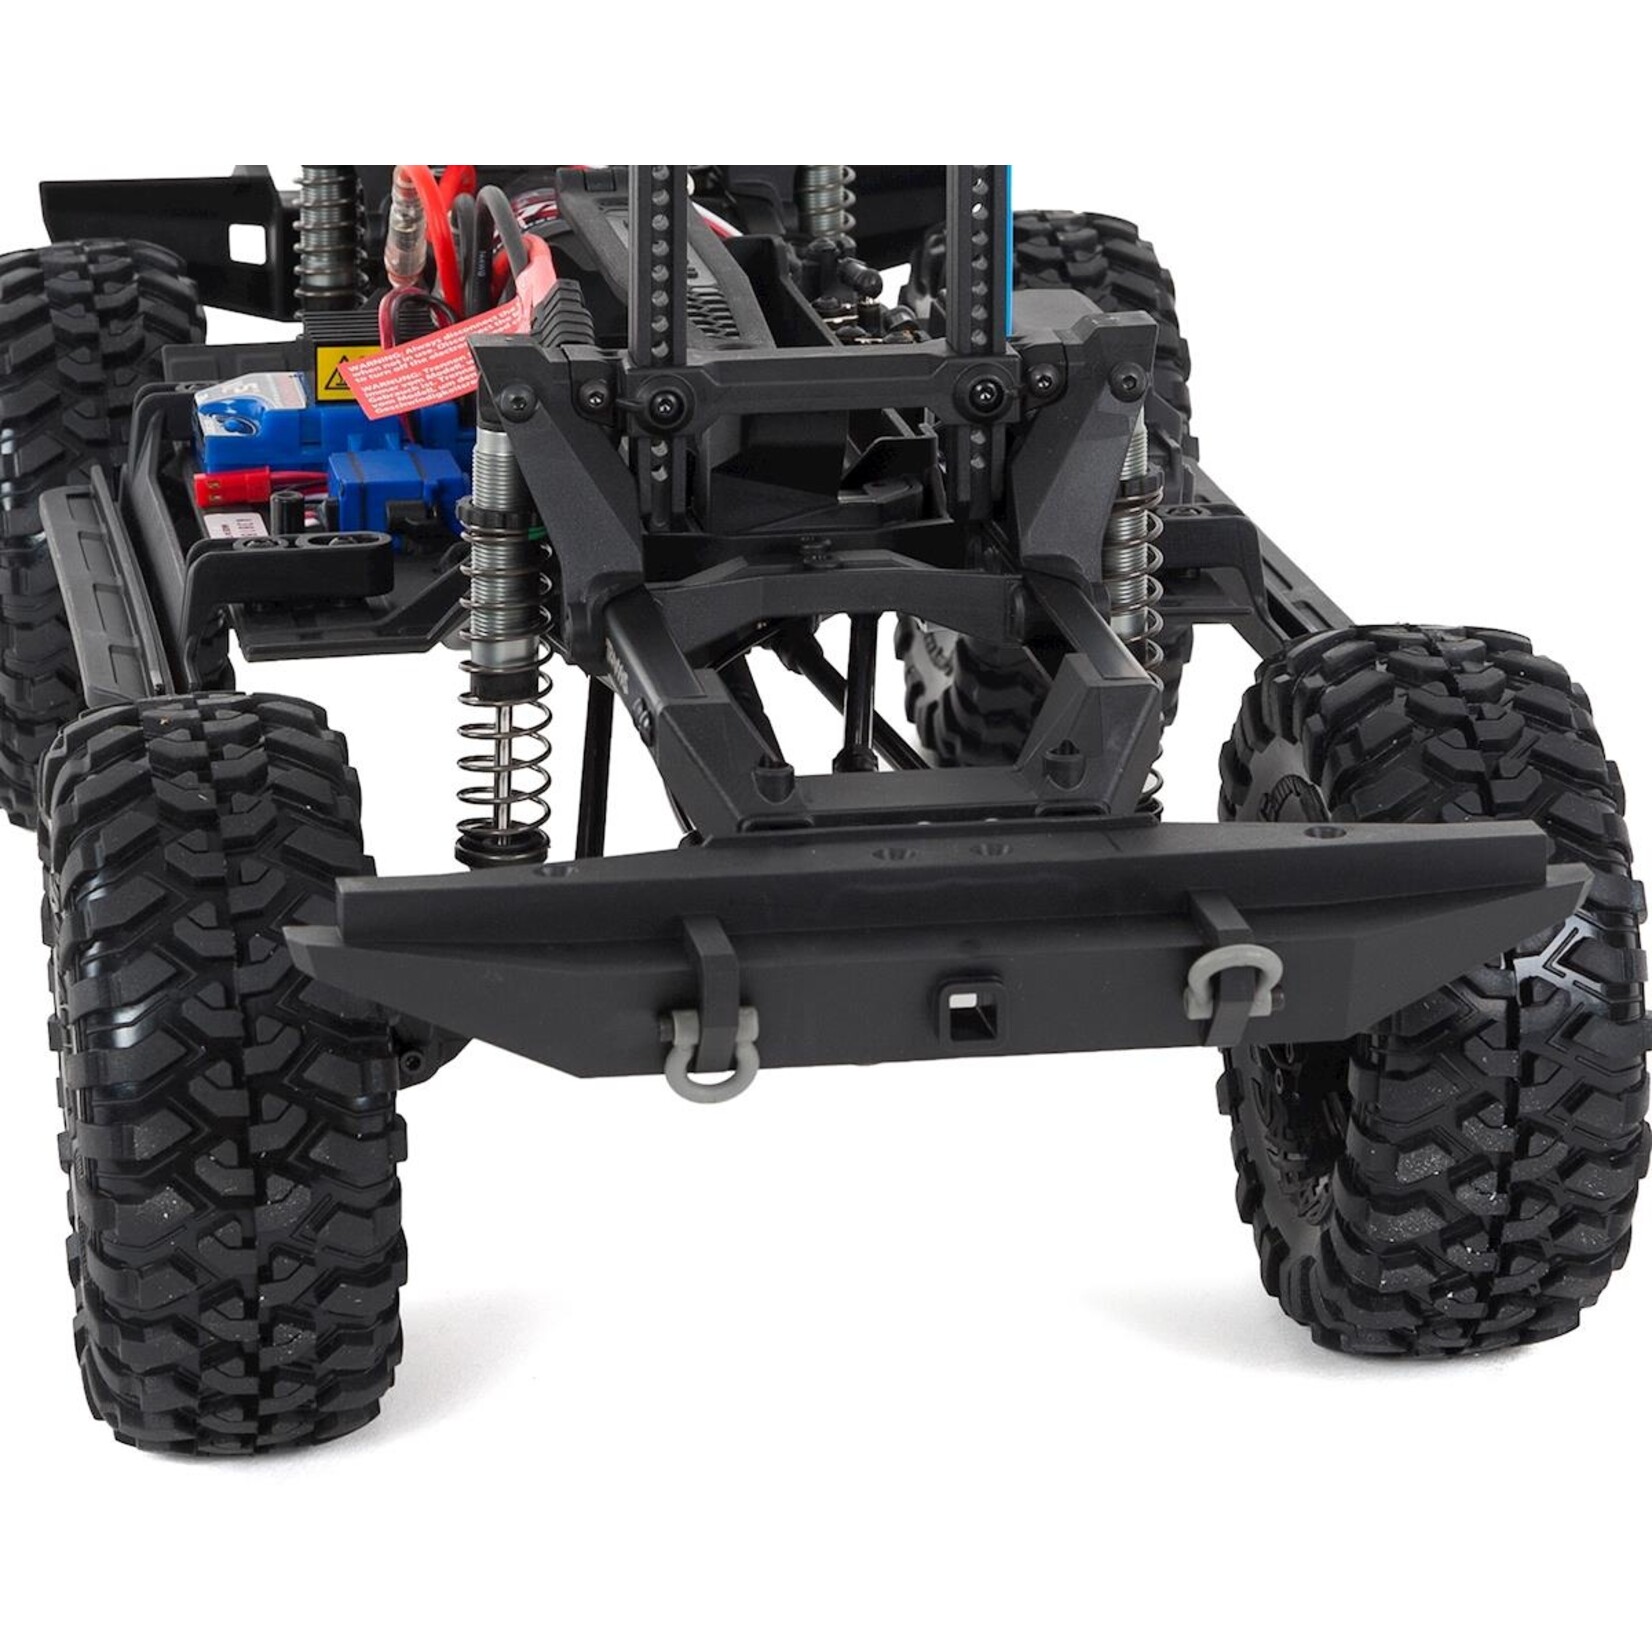 Traxxas Traxxas TRX-4 1/10 Scale Trail Rock Crawler w/Land Rover Defender Body (Blue) w/XL-5 ESC & TQi 2.4GHz Radio #82056-4-BLUE